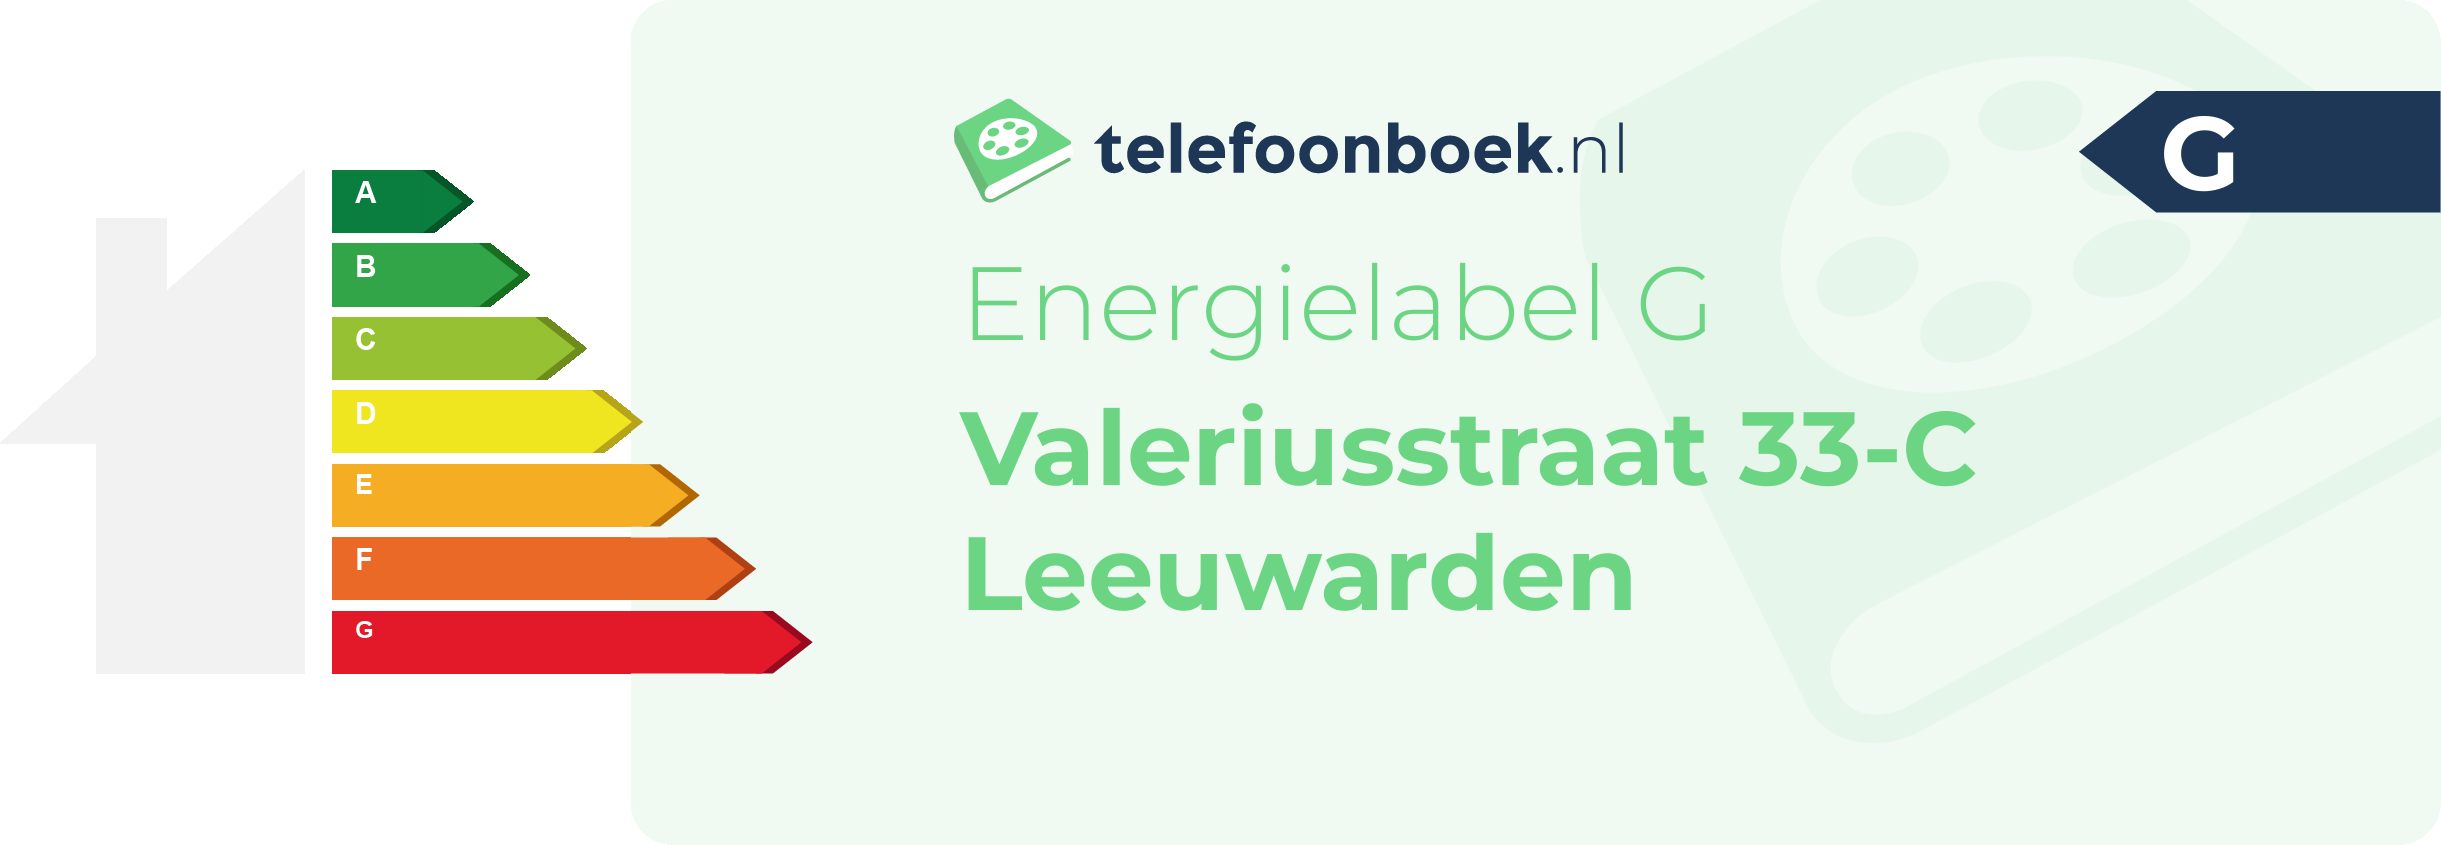 Energielabel Valeriusstraat 33-C Leeuwarden